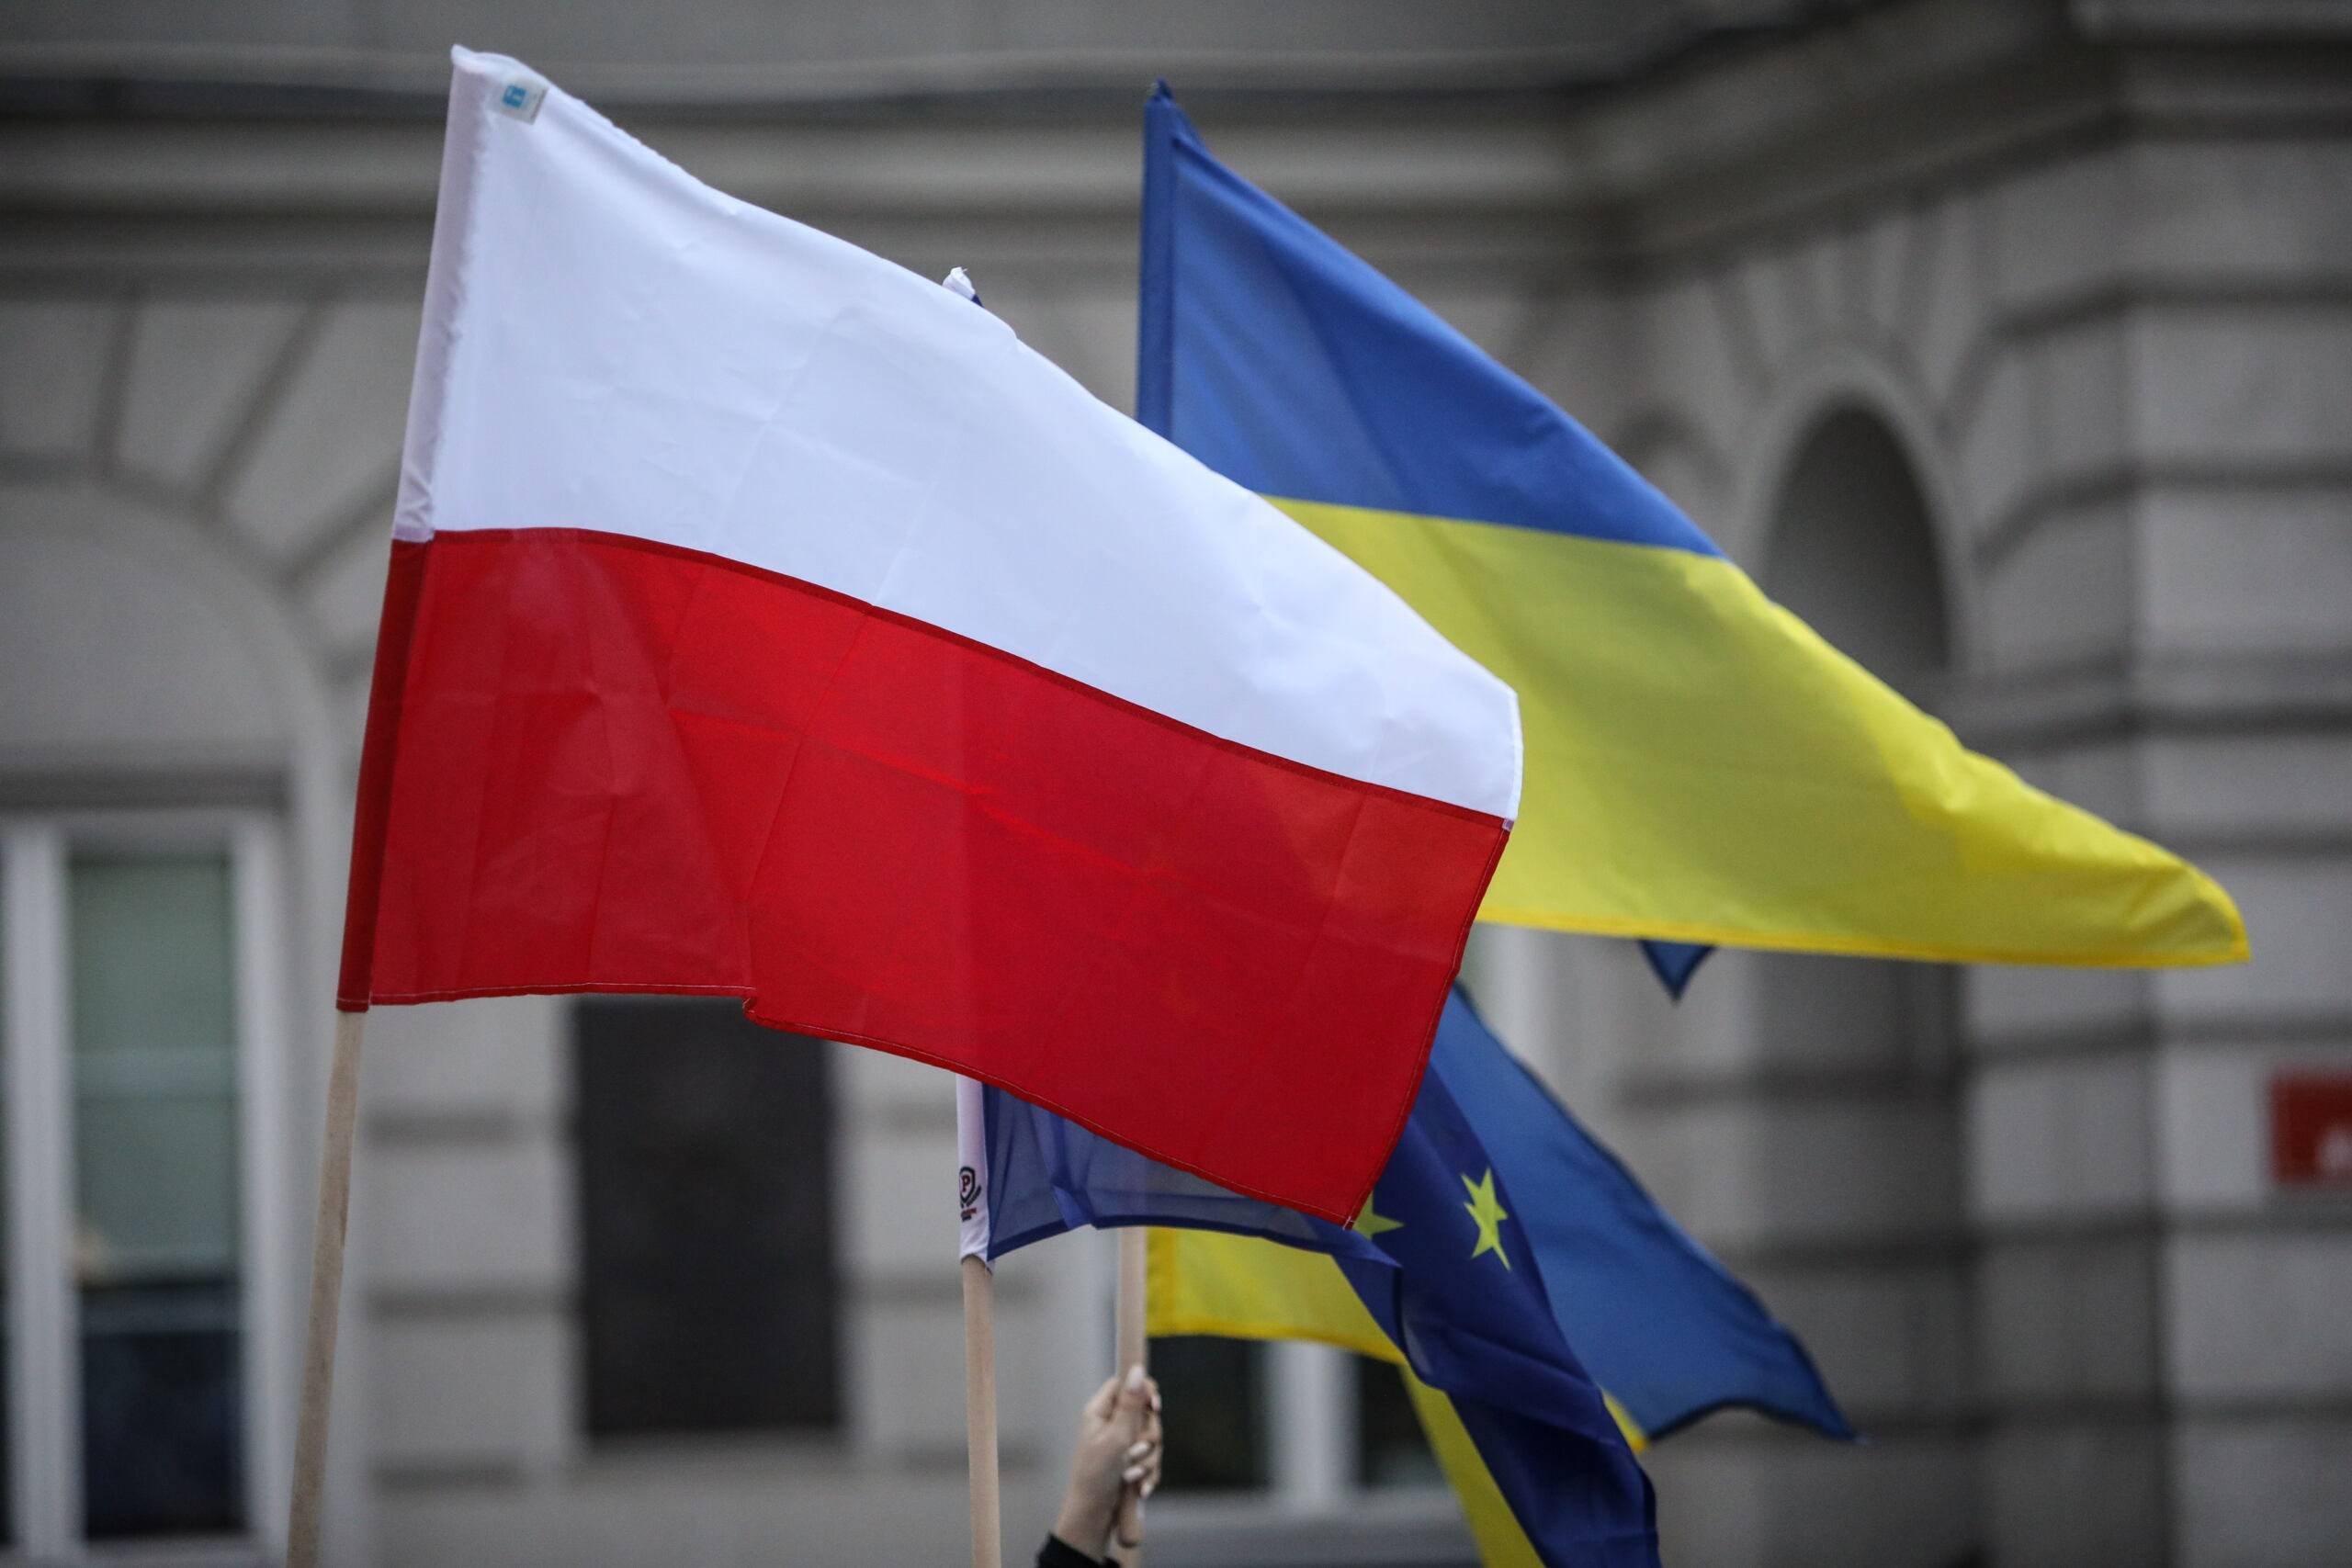 Flaga Polski i flaga Ukrainy